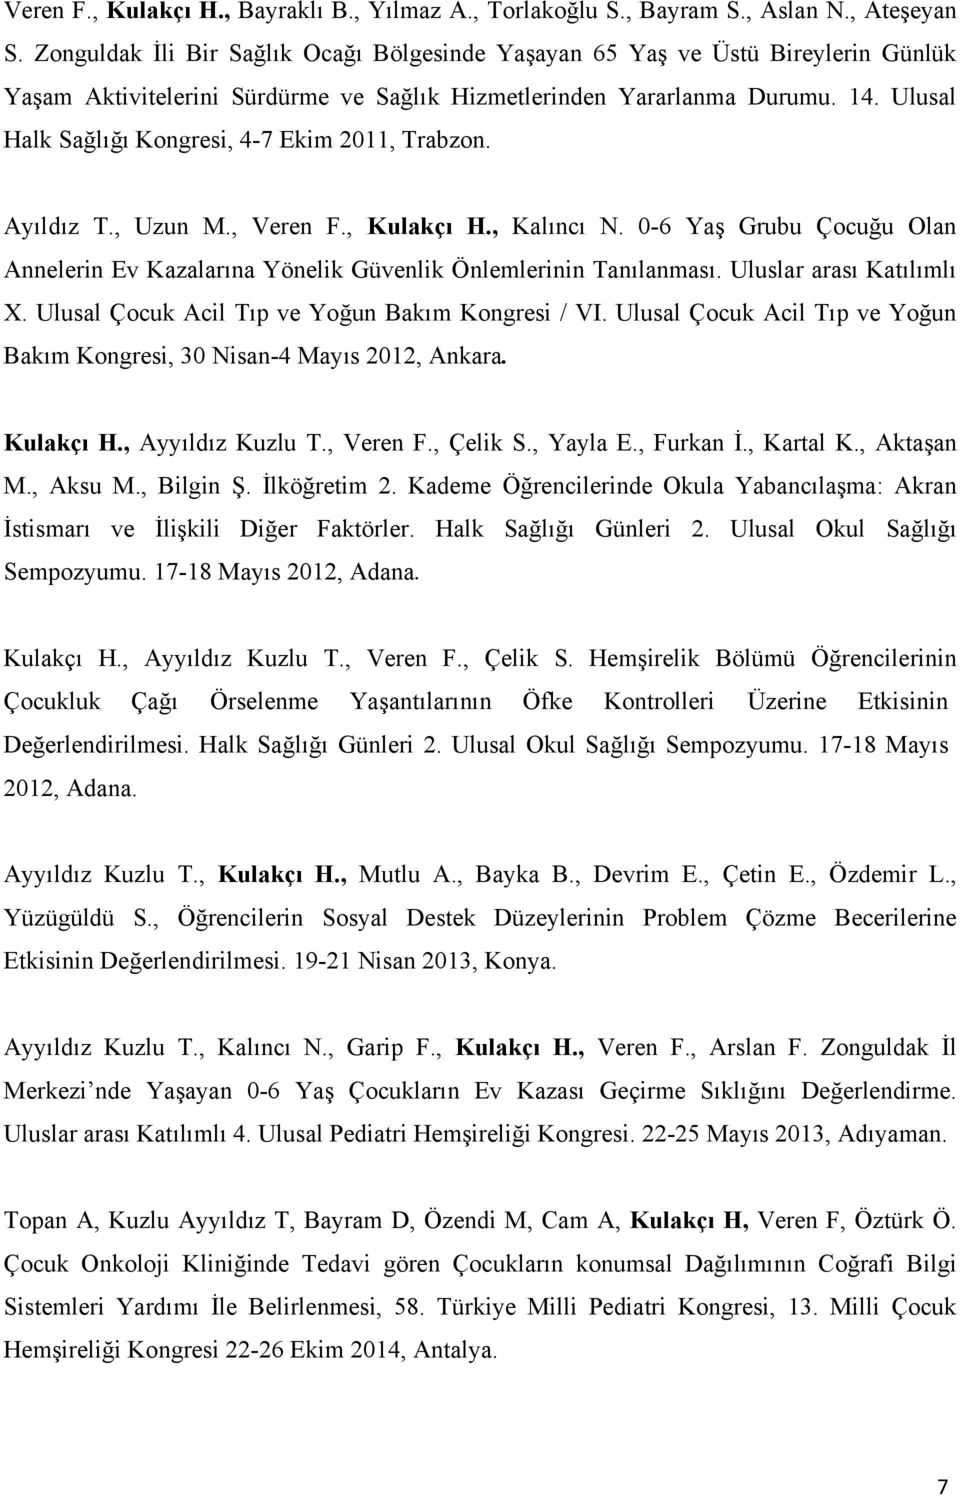 Ulusal Halk Sağlığı Kongresi, 4-7 Ekim 2011, Trabzon. Ayıldız T., Uzun M., Veren F., Kulakçı H., Kalıncı N. 0-6 Yaş Grubu Çocuğu Olan Annelerin Ev Kazalarına Yönelik Güvenlik Önlemlerinin Tanılanması.